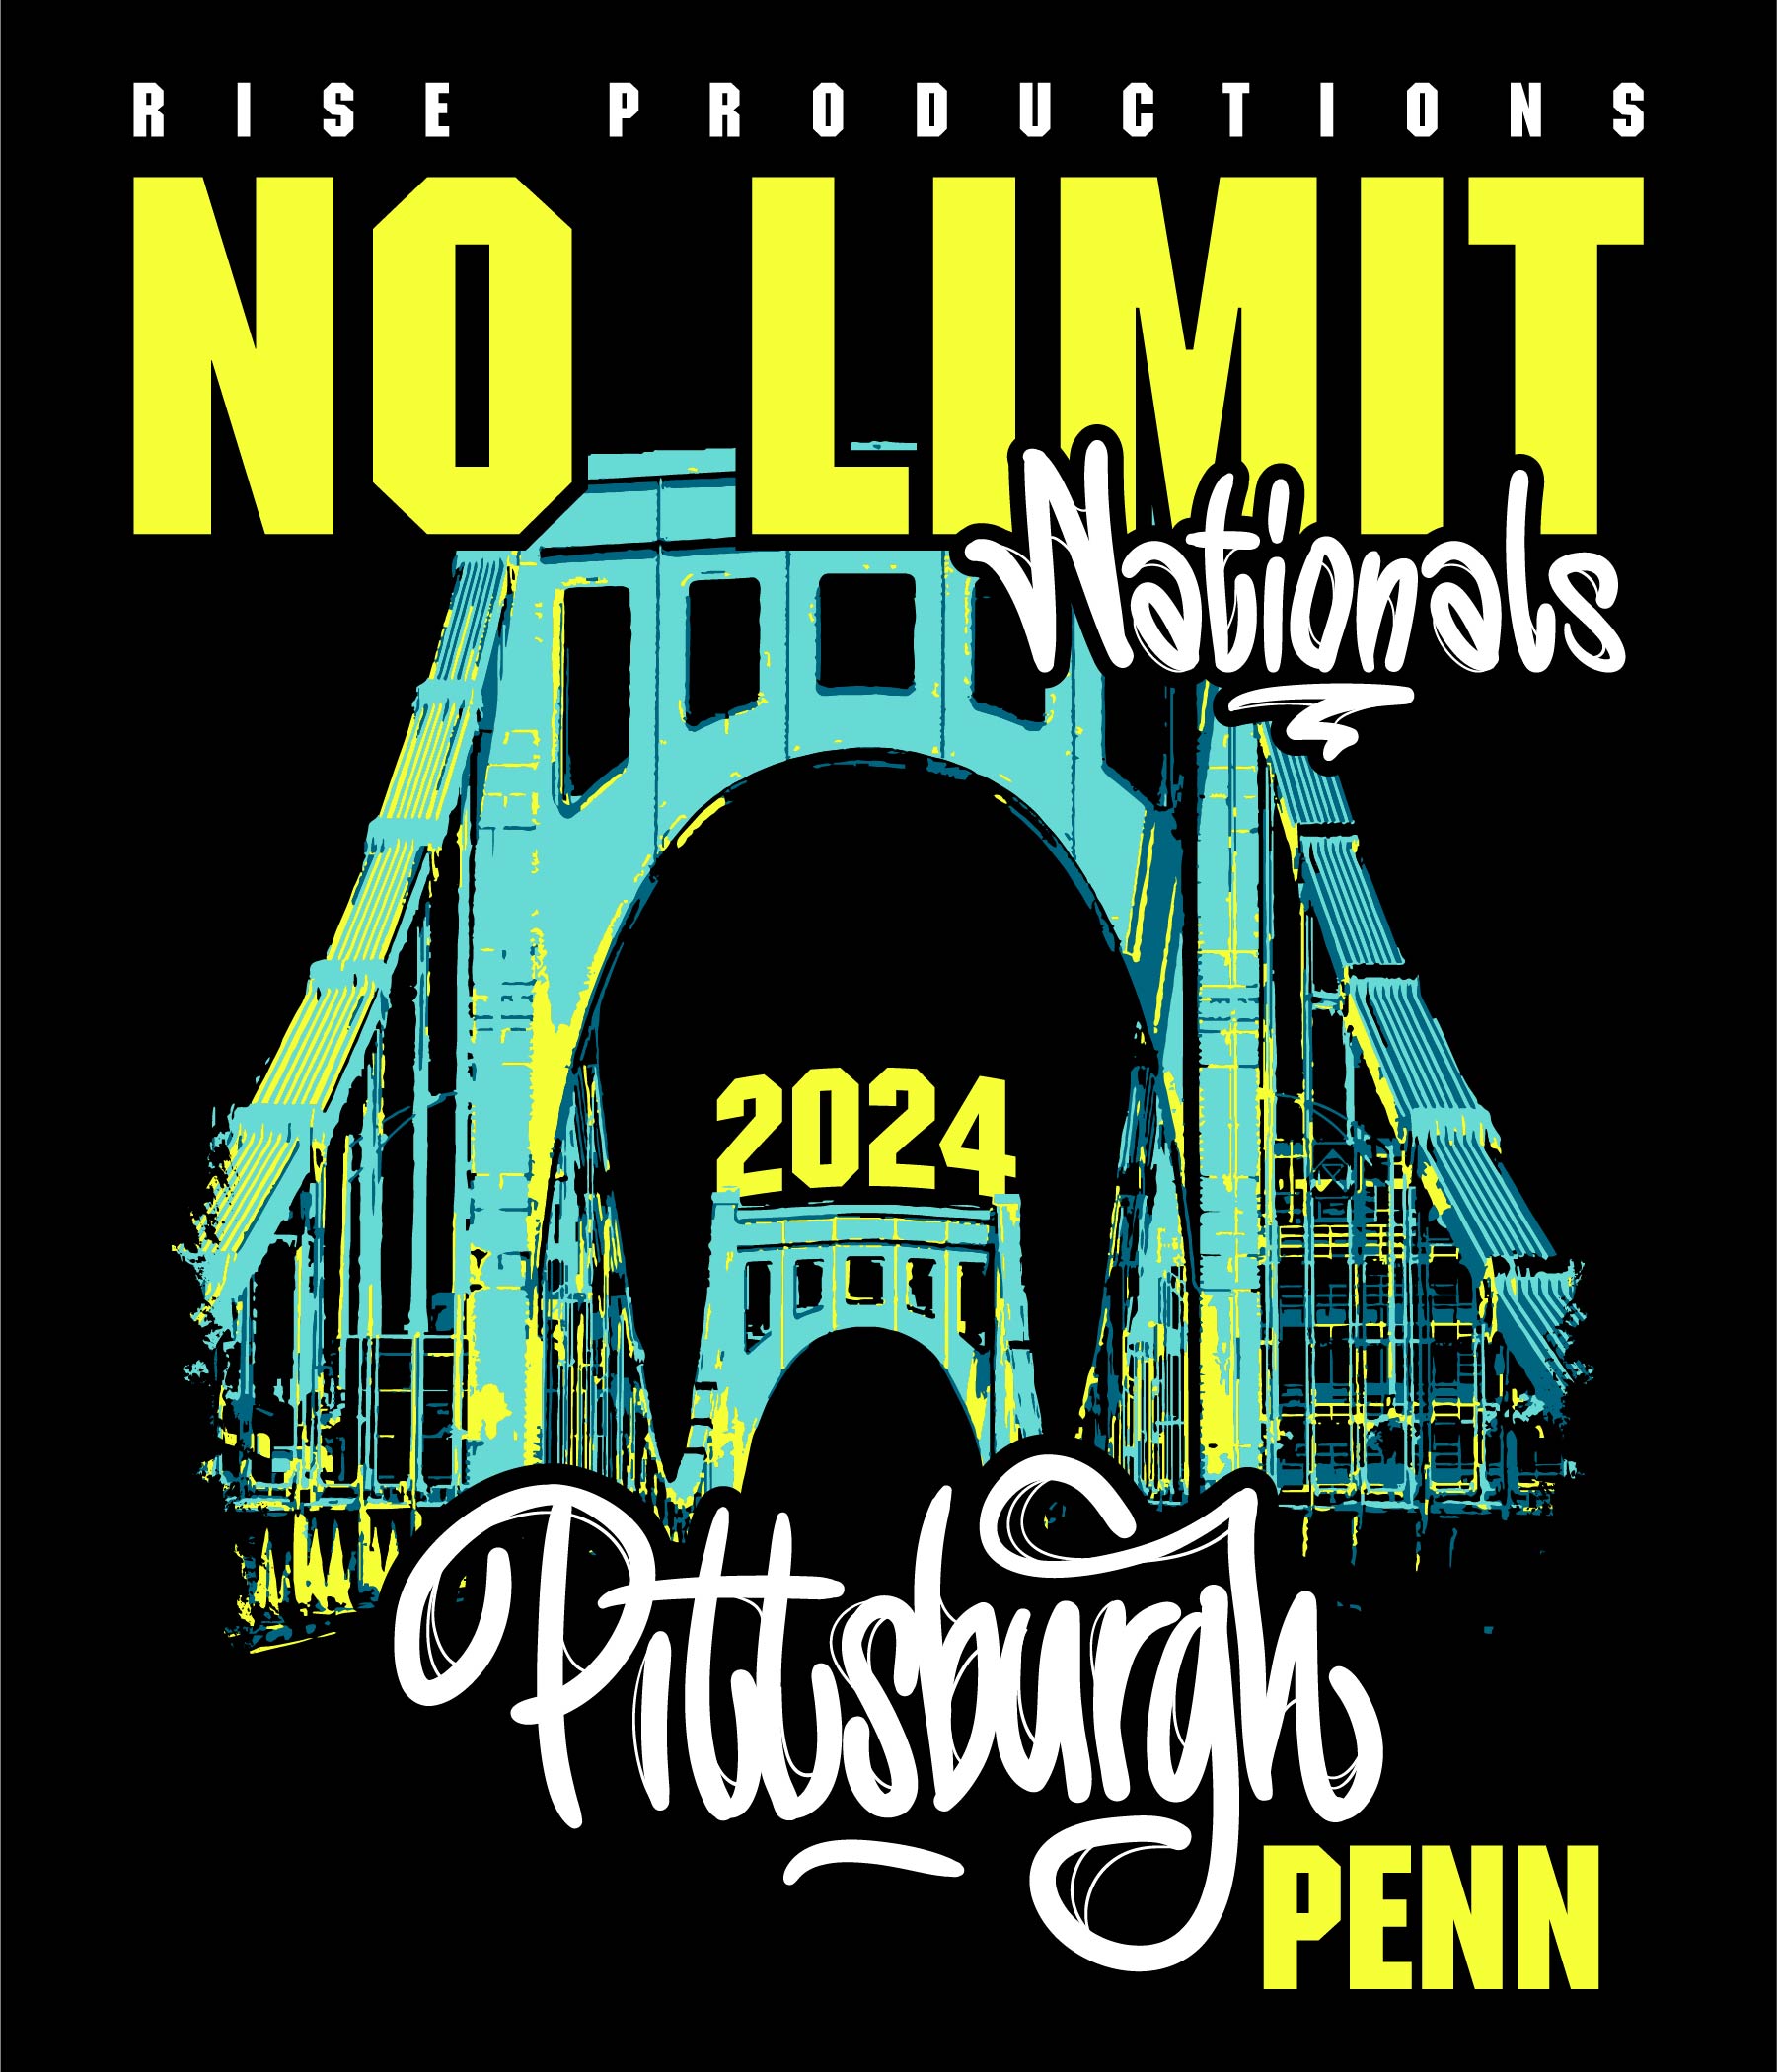 No Limit Nationals 2024